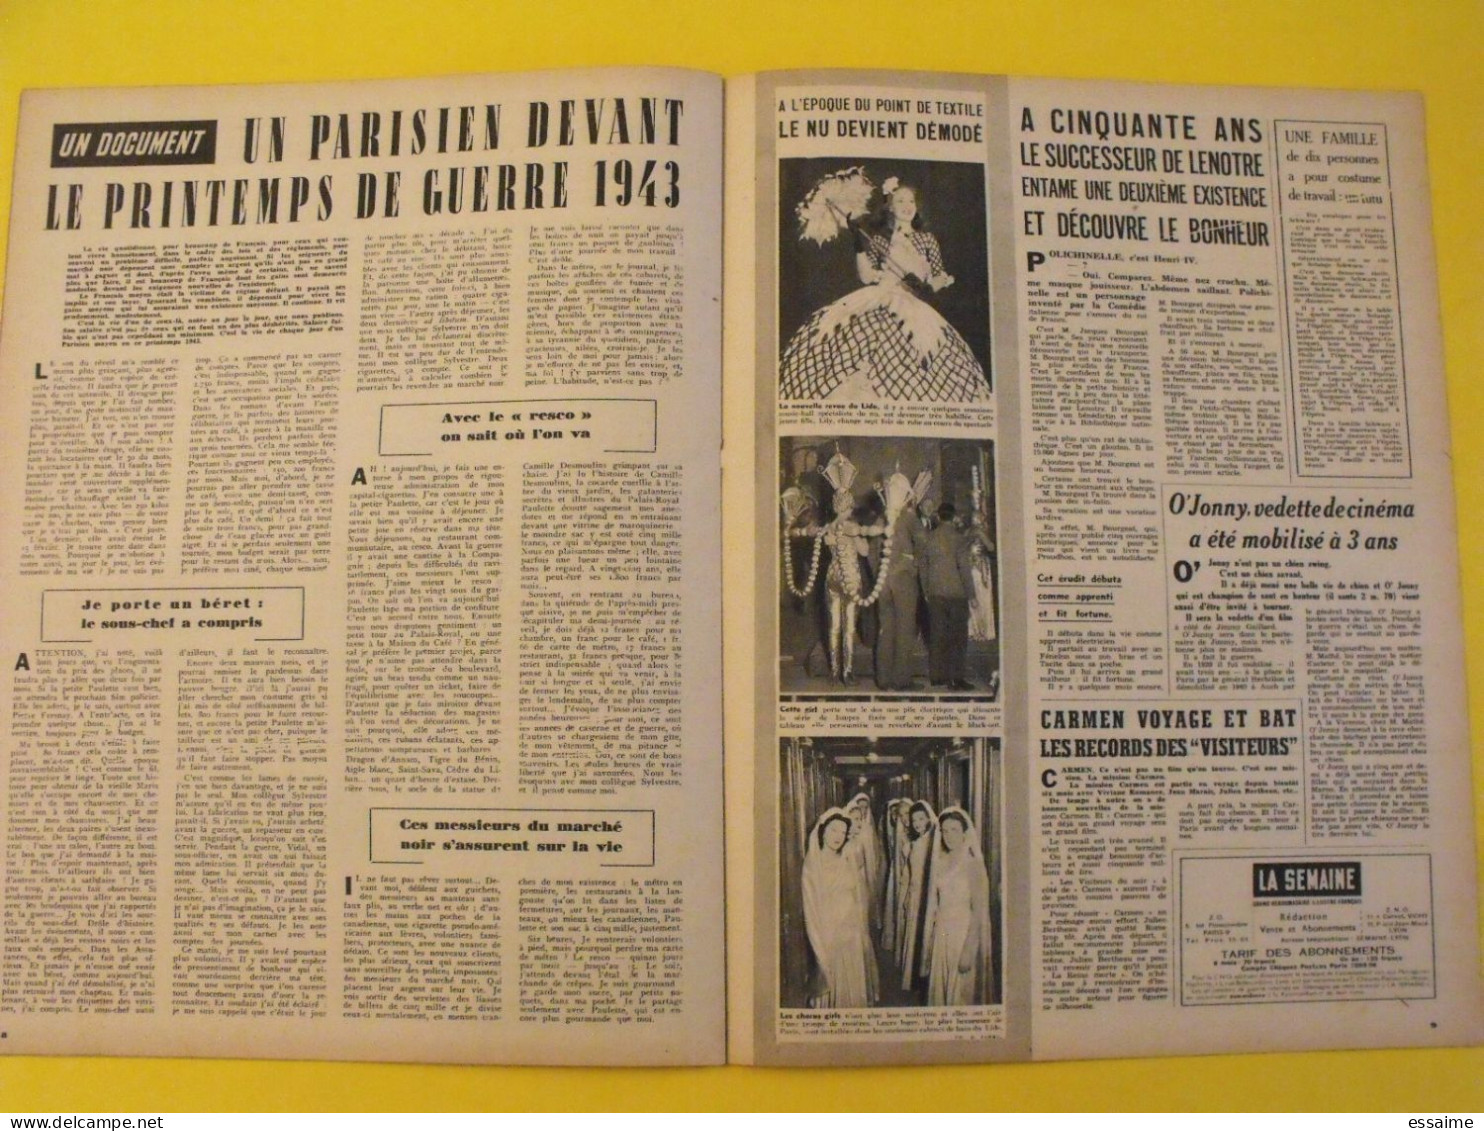 6 revues La semaine de 1943. actualités guerre photos collaboration moscou edwige feuillère stalingrad andré claveau